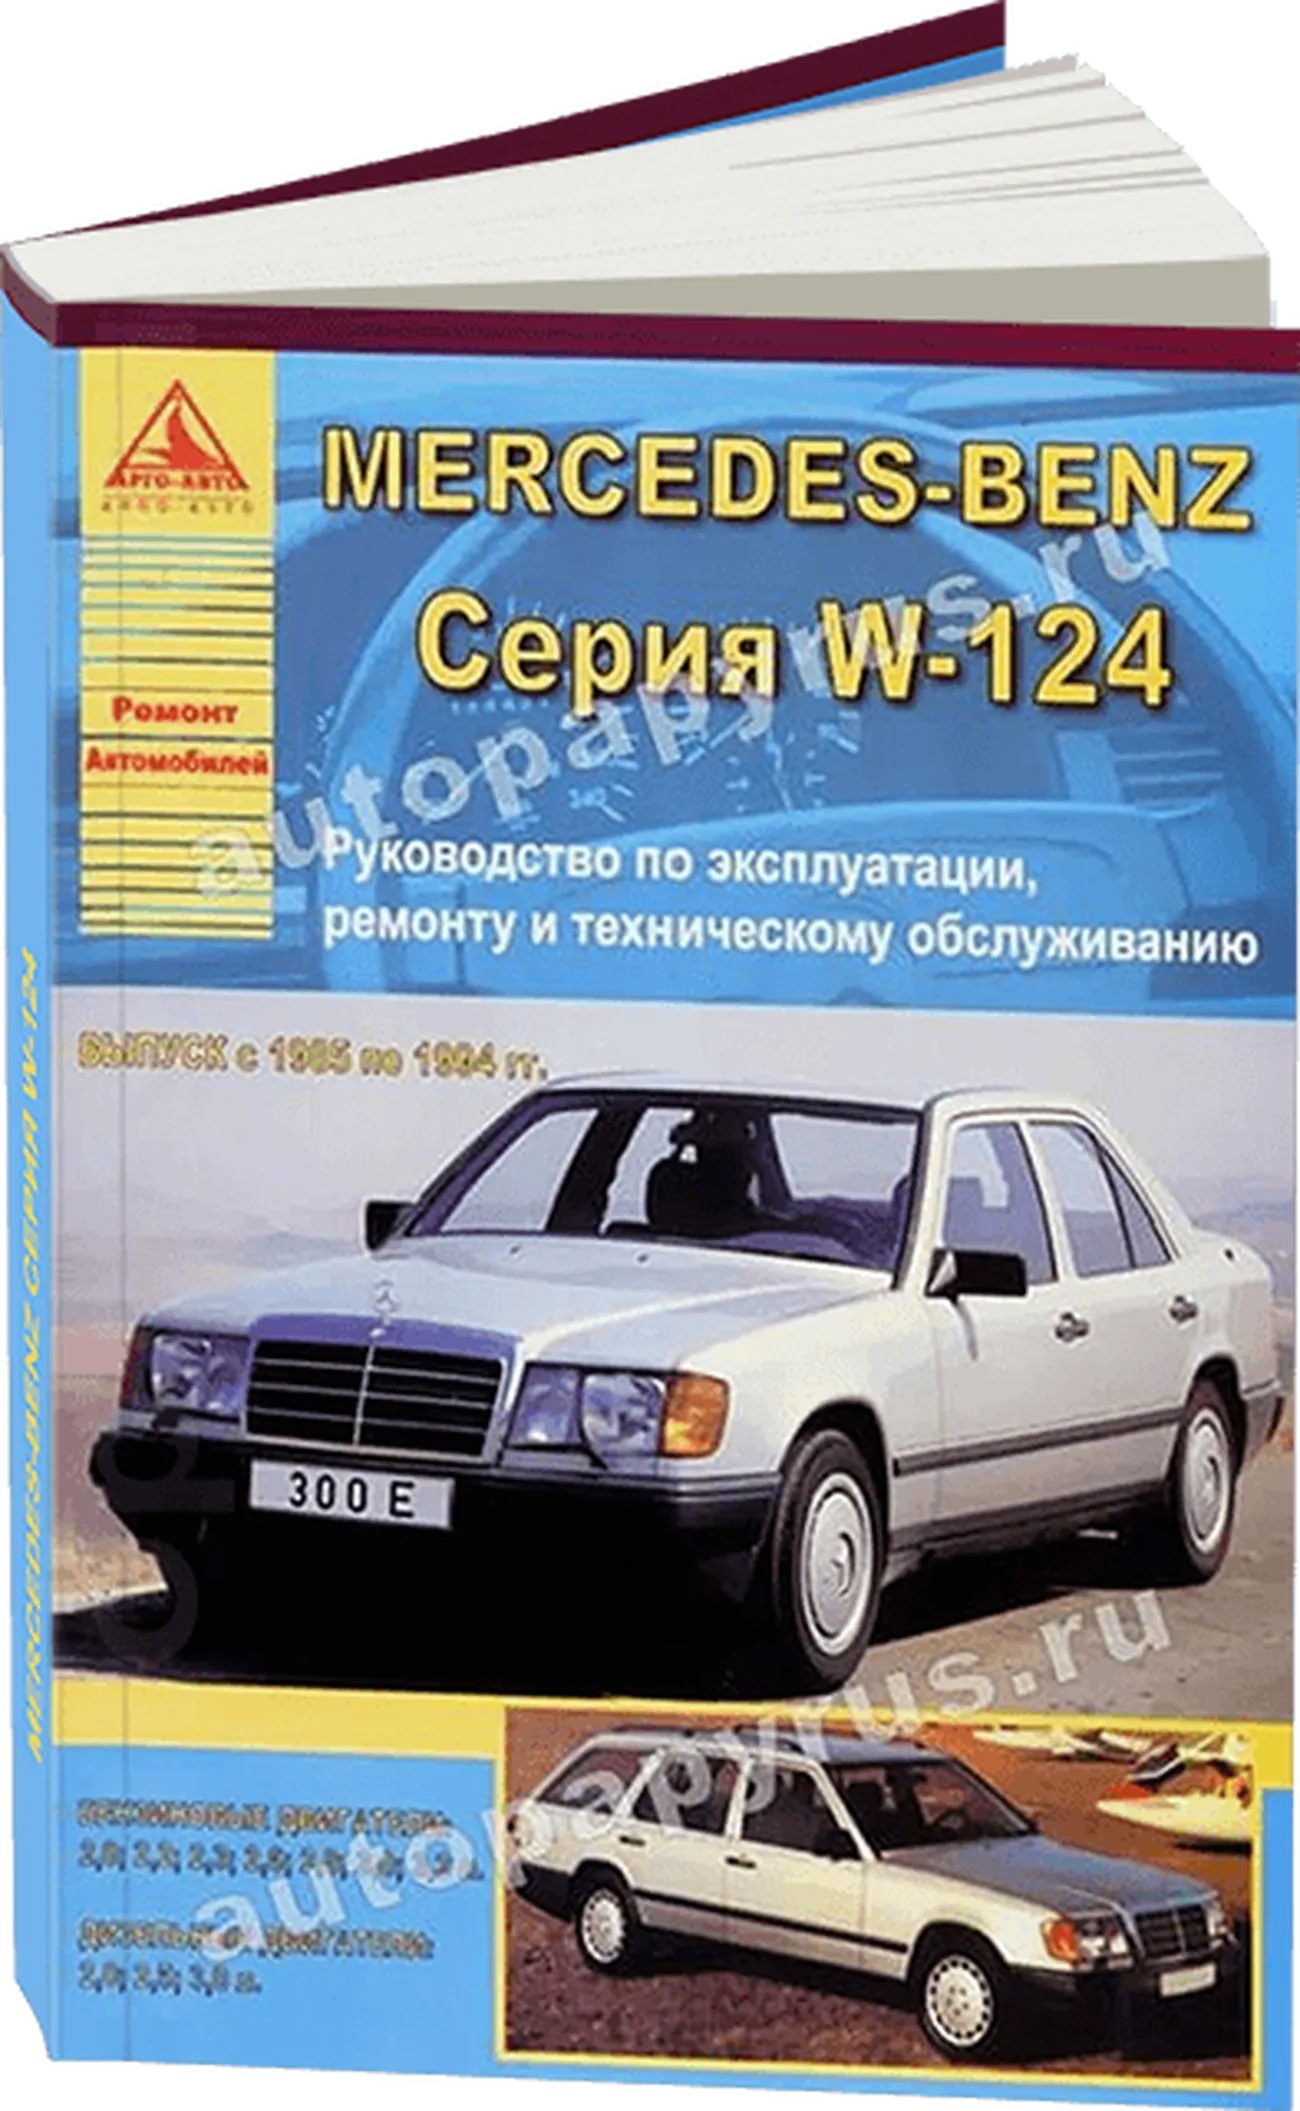 Книга: MERCEDES-BENZ E класс (W-124) (б , д) 1985-1994 г.в., рем., экспл., то | Арго-Авто